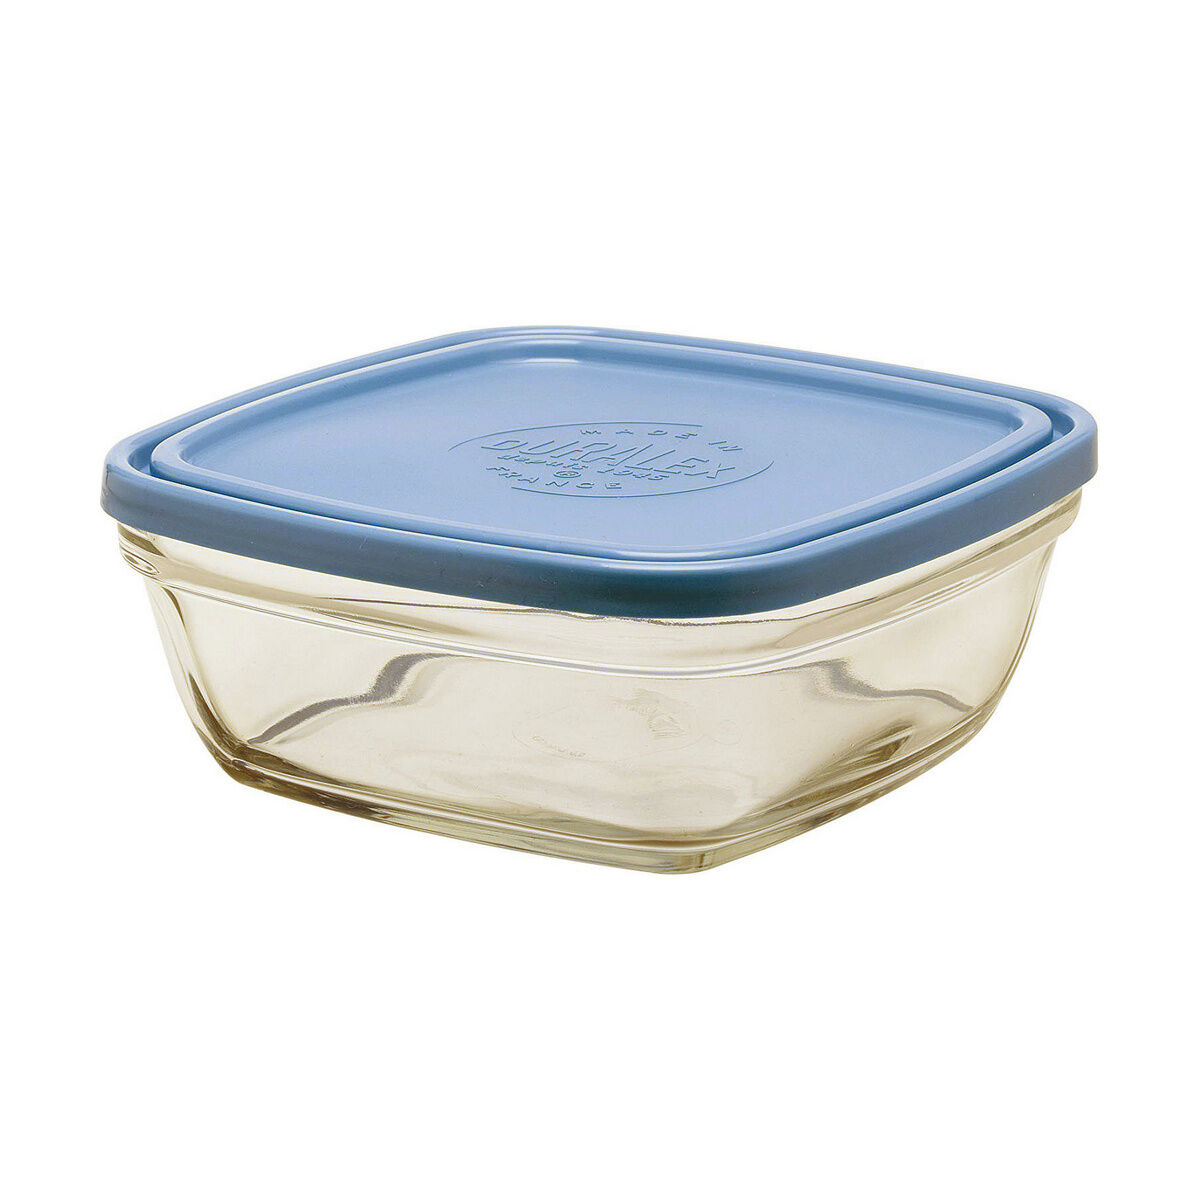 Porta pranzo Ermetico Duralex Freshbox Azzurro Quadrato (17 x 17 x 7 cm) (1,15 L)